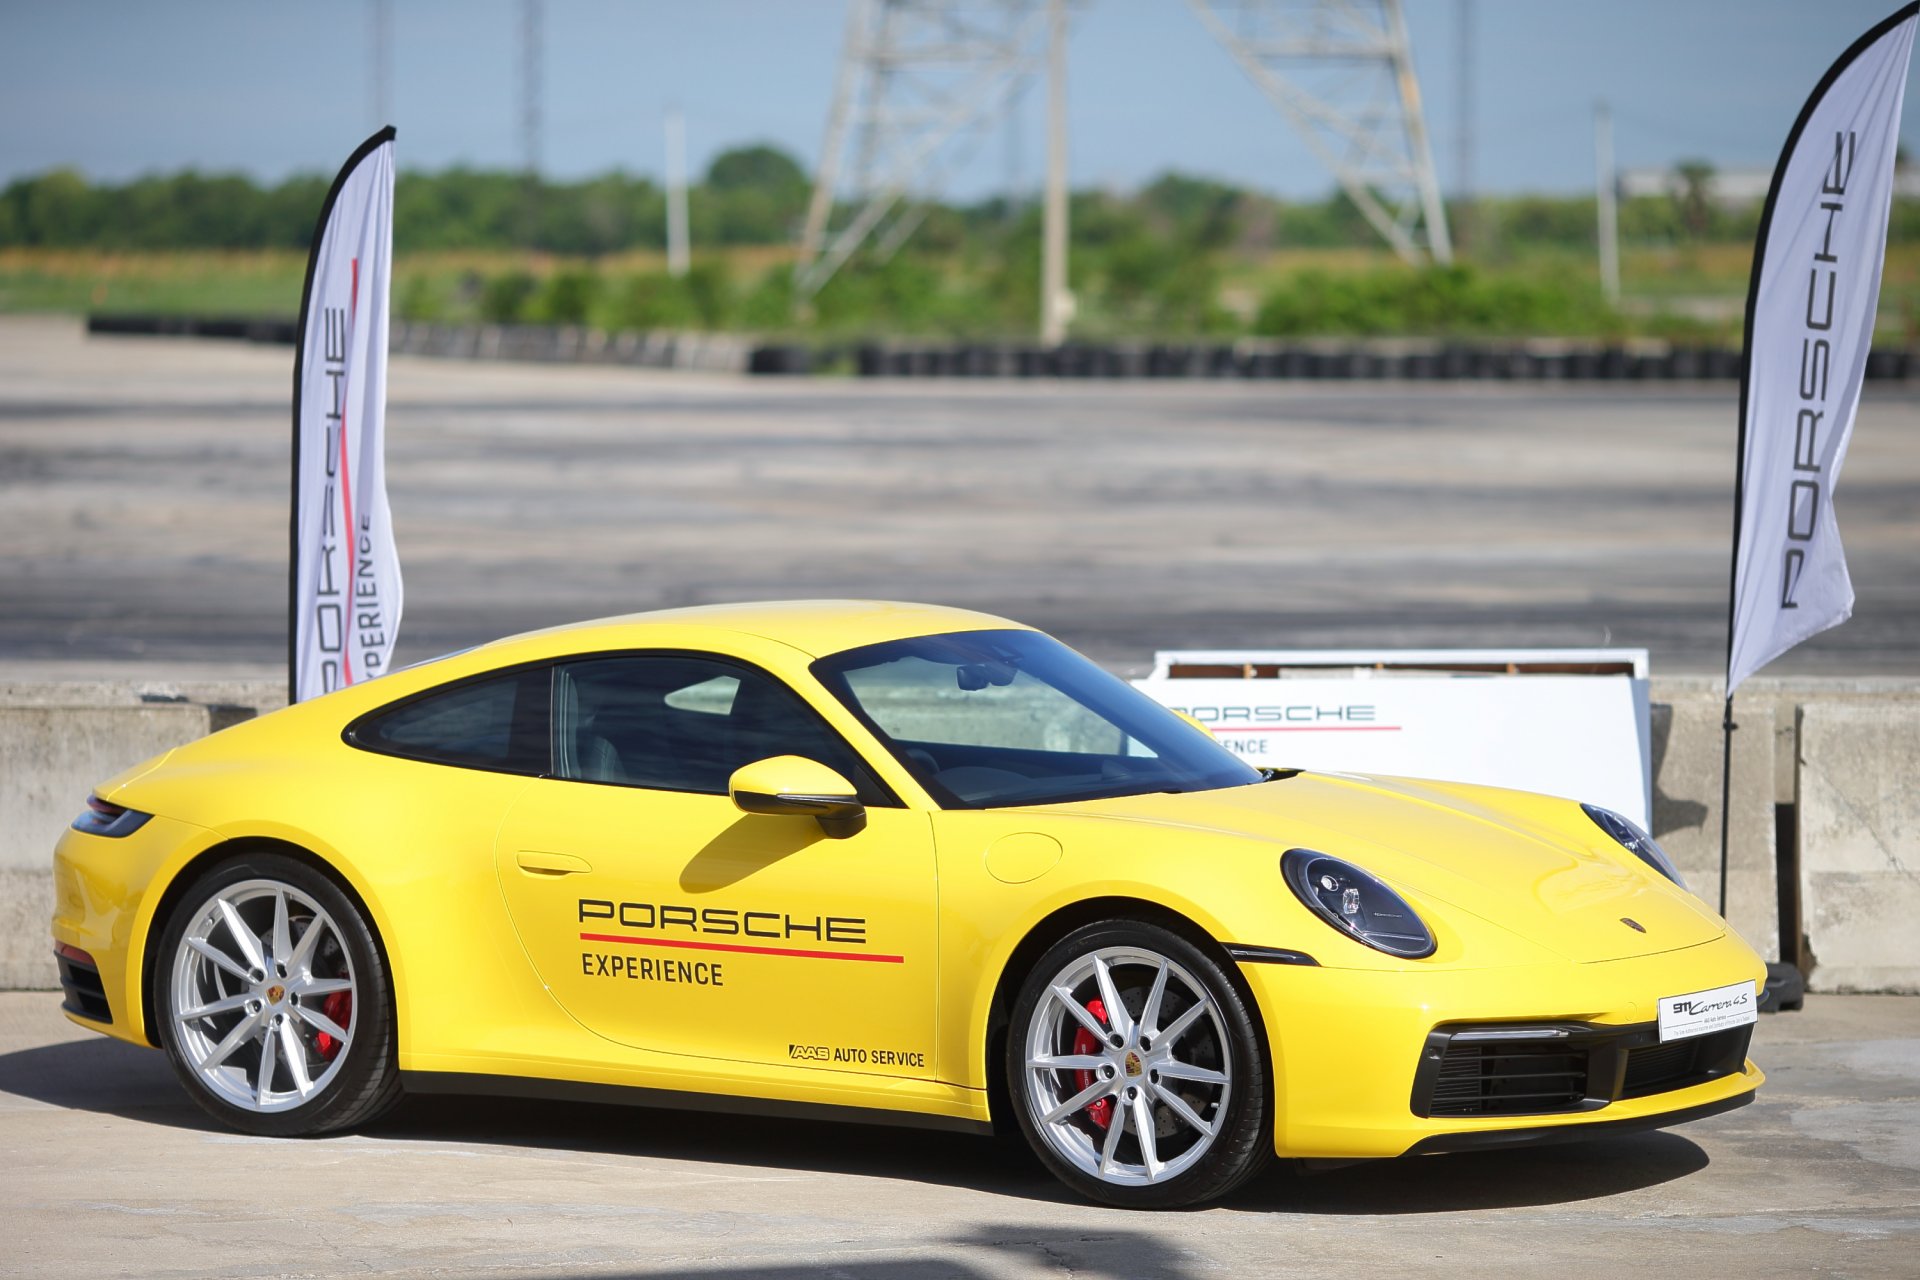 Porsche Driver’s Safety Training 2019  เอเอเอสฯ จัดกิจกรรมสร้างความมั่นใจในการขับขี่รถยนต์ปอร์เช่อย่างปลอดภัย ตอกย้ำนโยบาย “ดูแลทั้งรถและคุณ” 